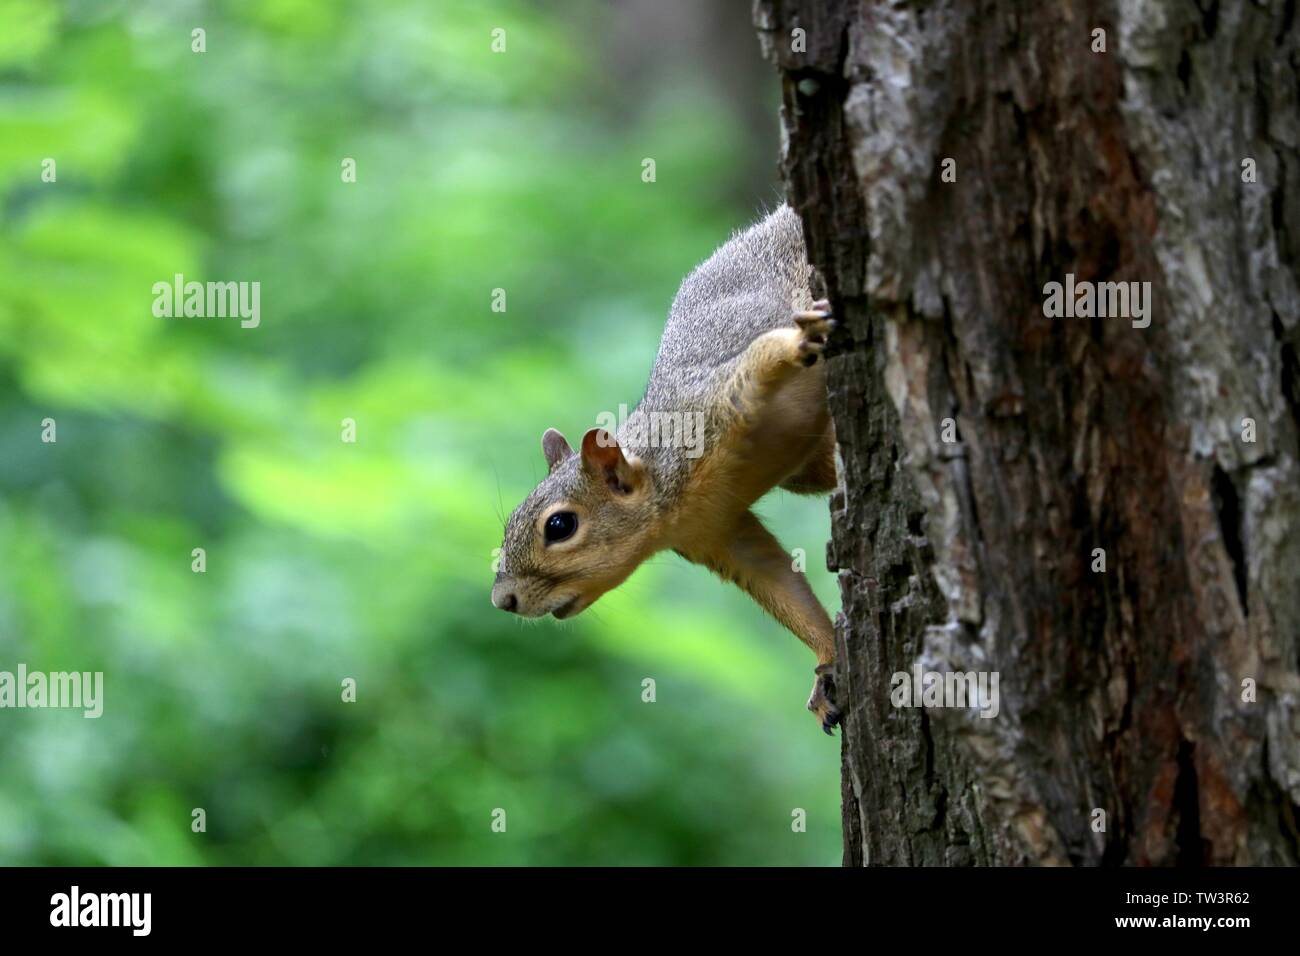 Primer plano de una ardilla en un árbol consciente de su entorno Foto de stock